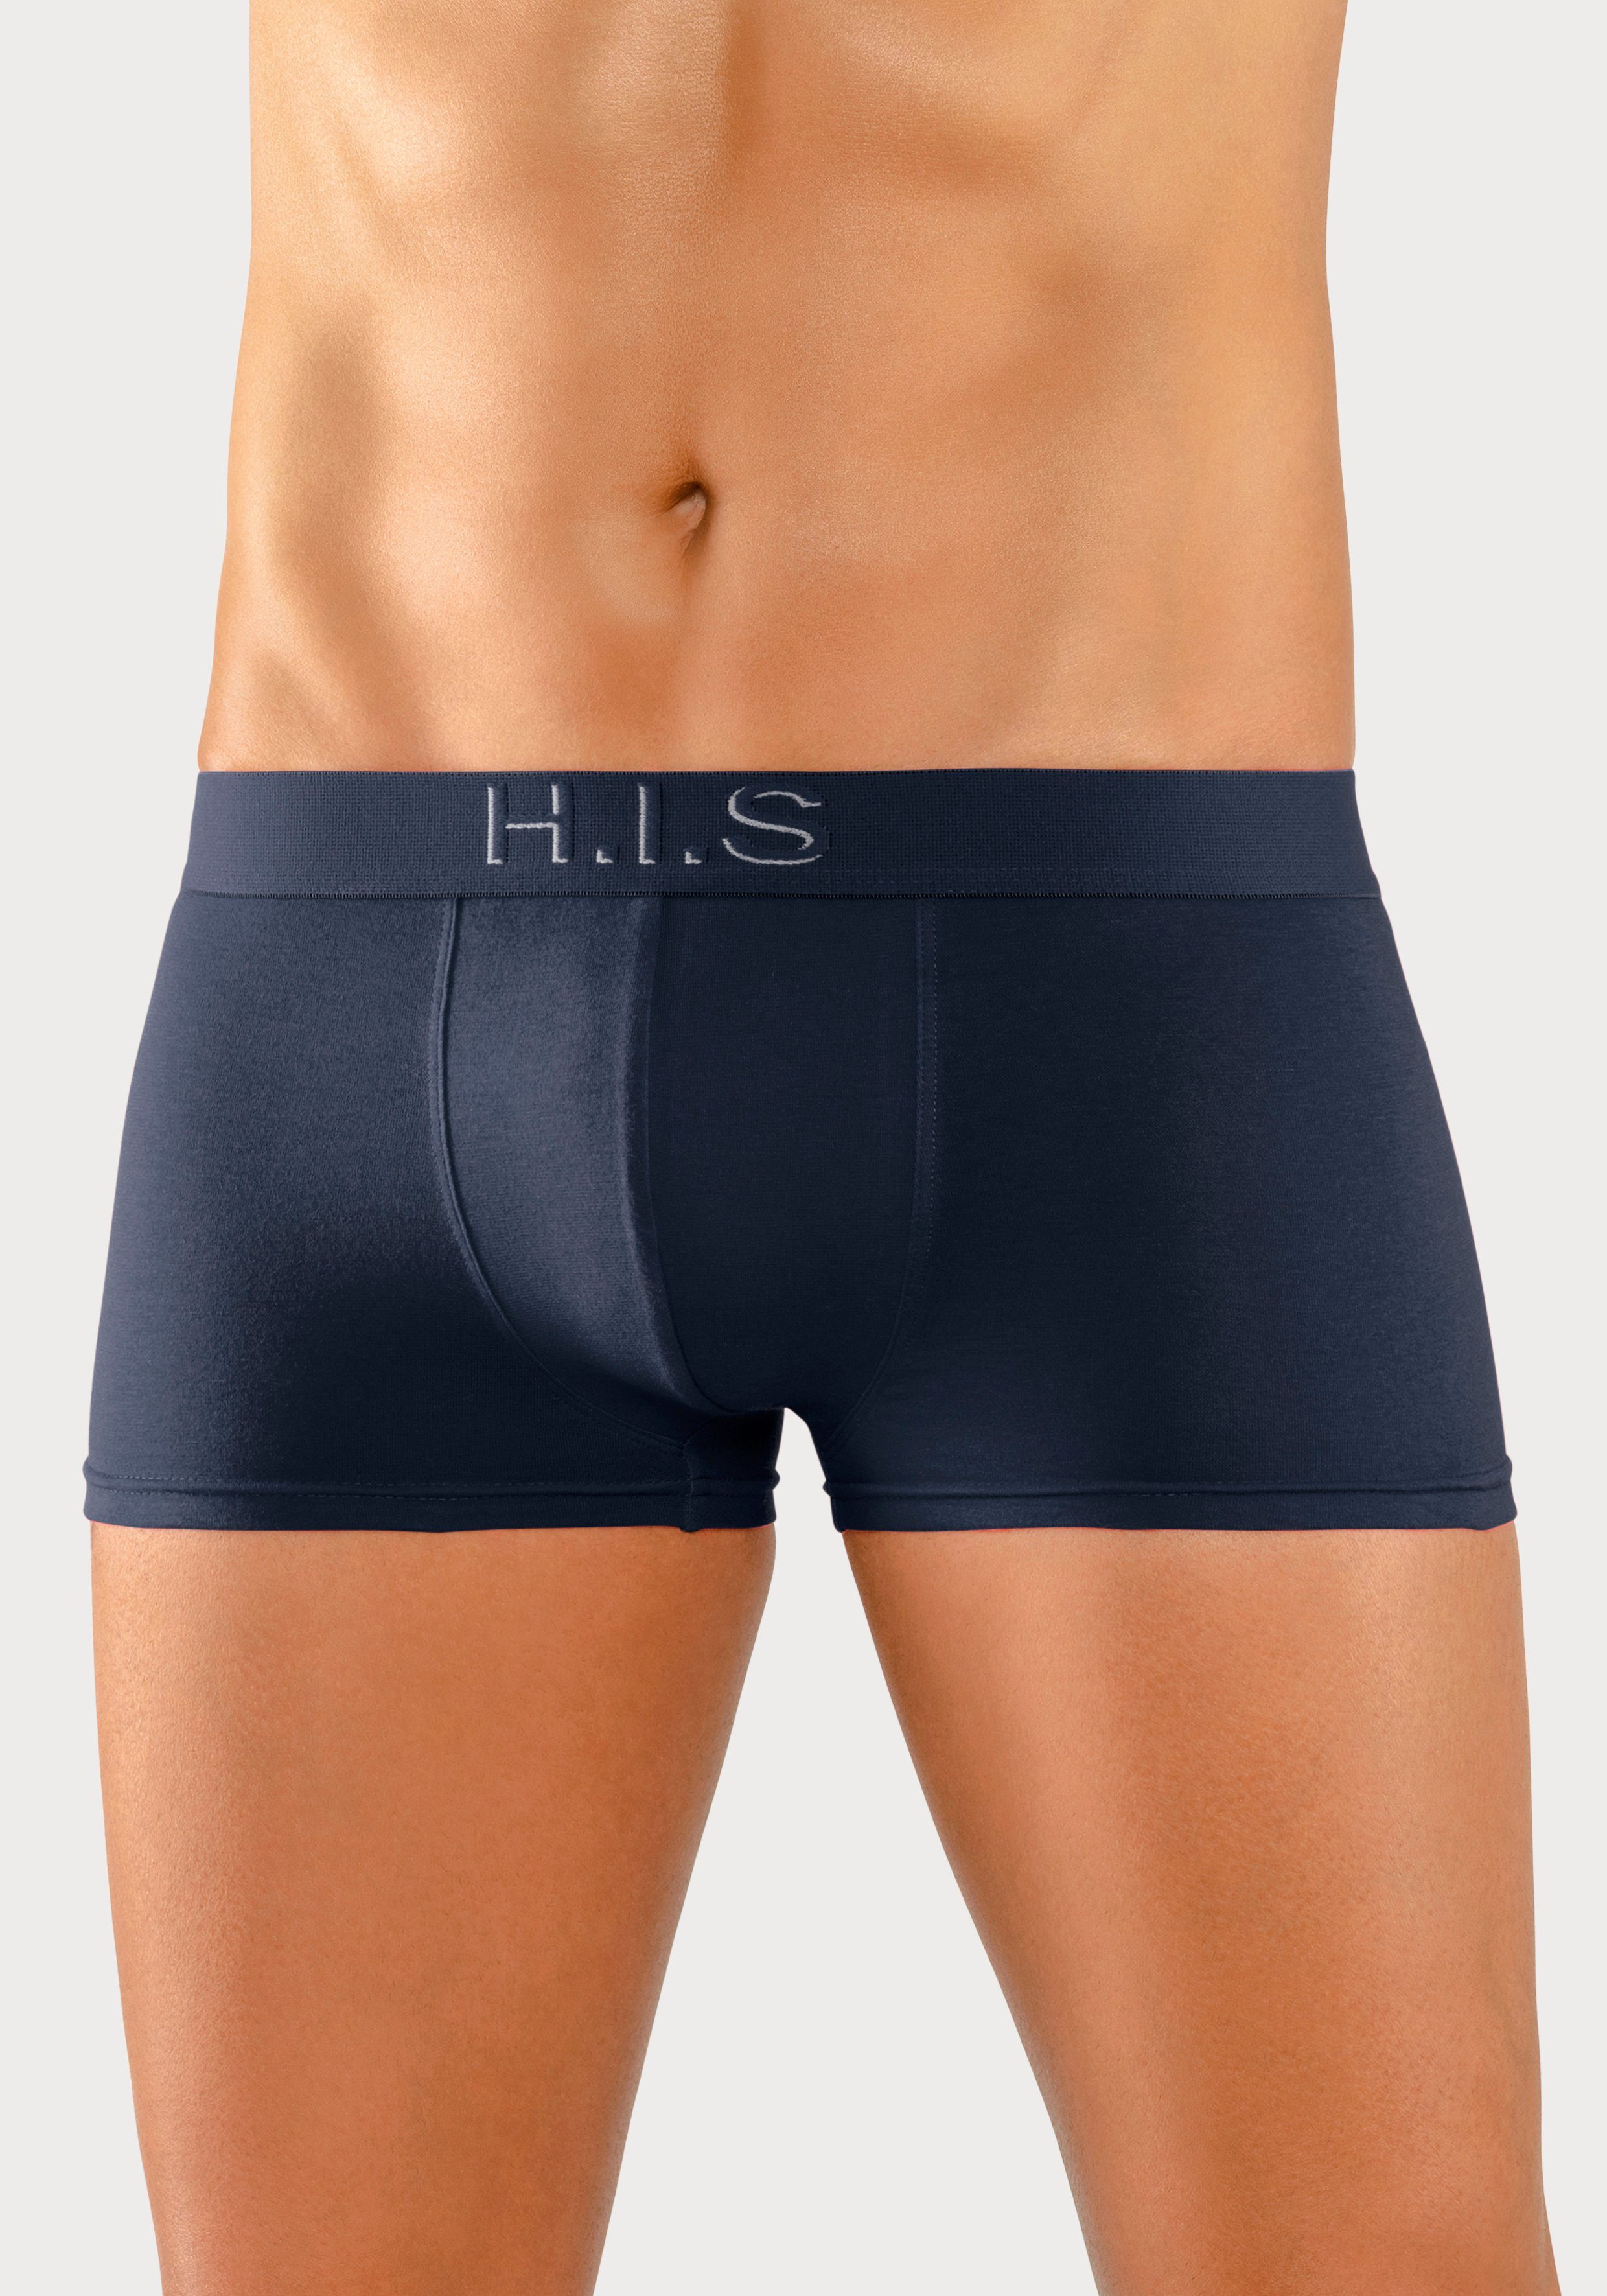 Webbund blau H.I.S Hipster-Form 3D 5-St) Boxershorts (Packung, navy, am Effekt mit Logoschriftzug schwarz, rot, in mit grau-meliert,